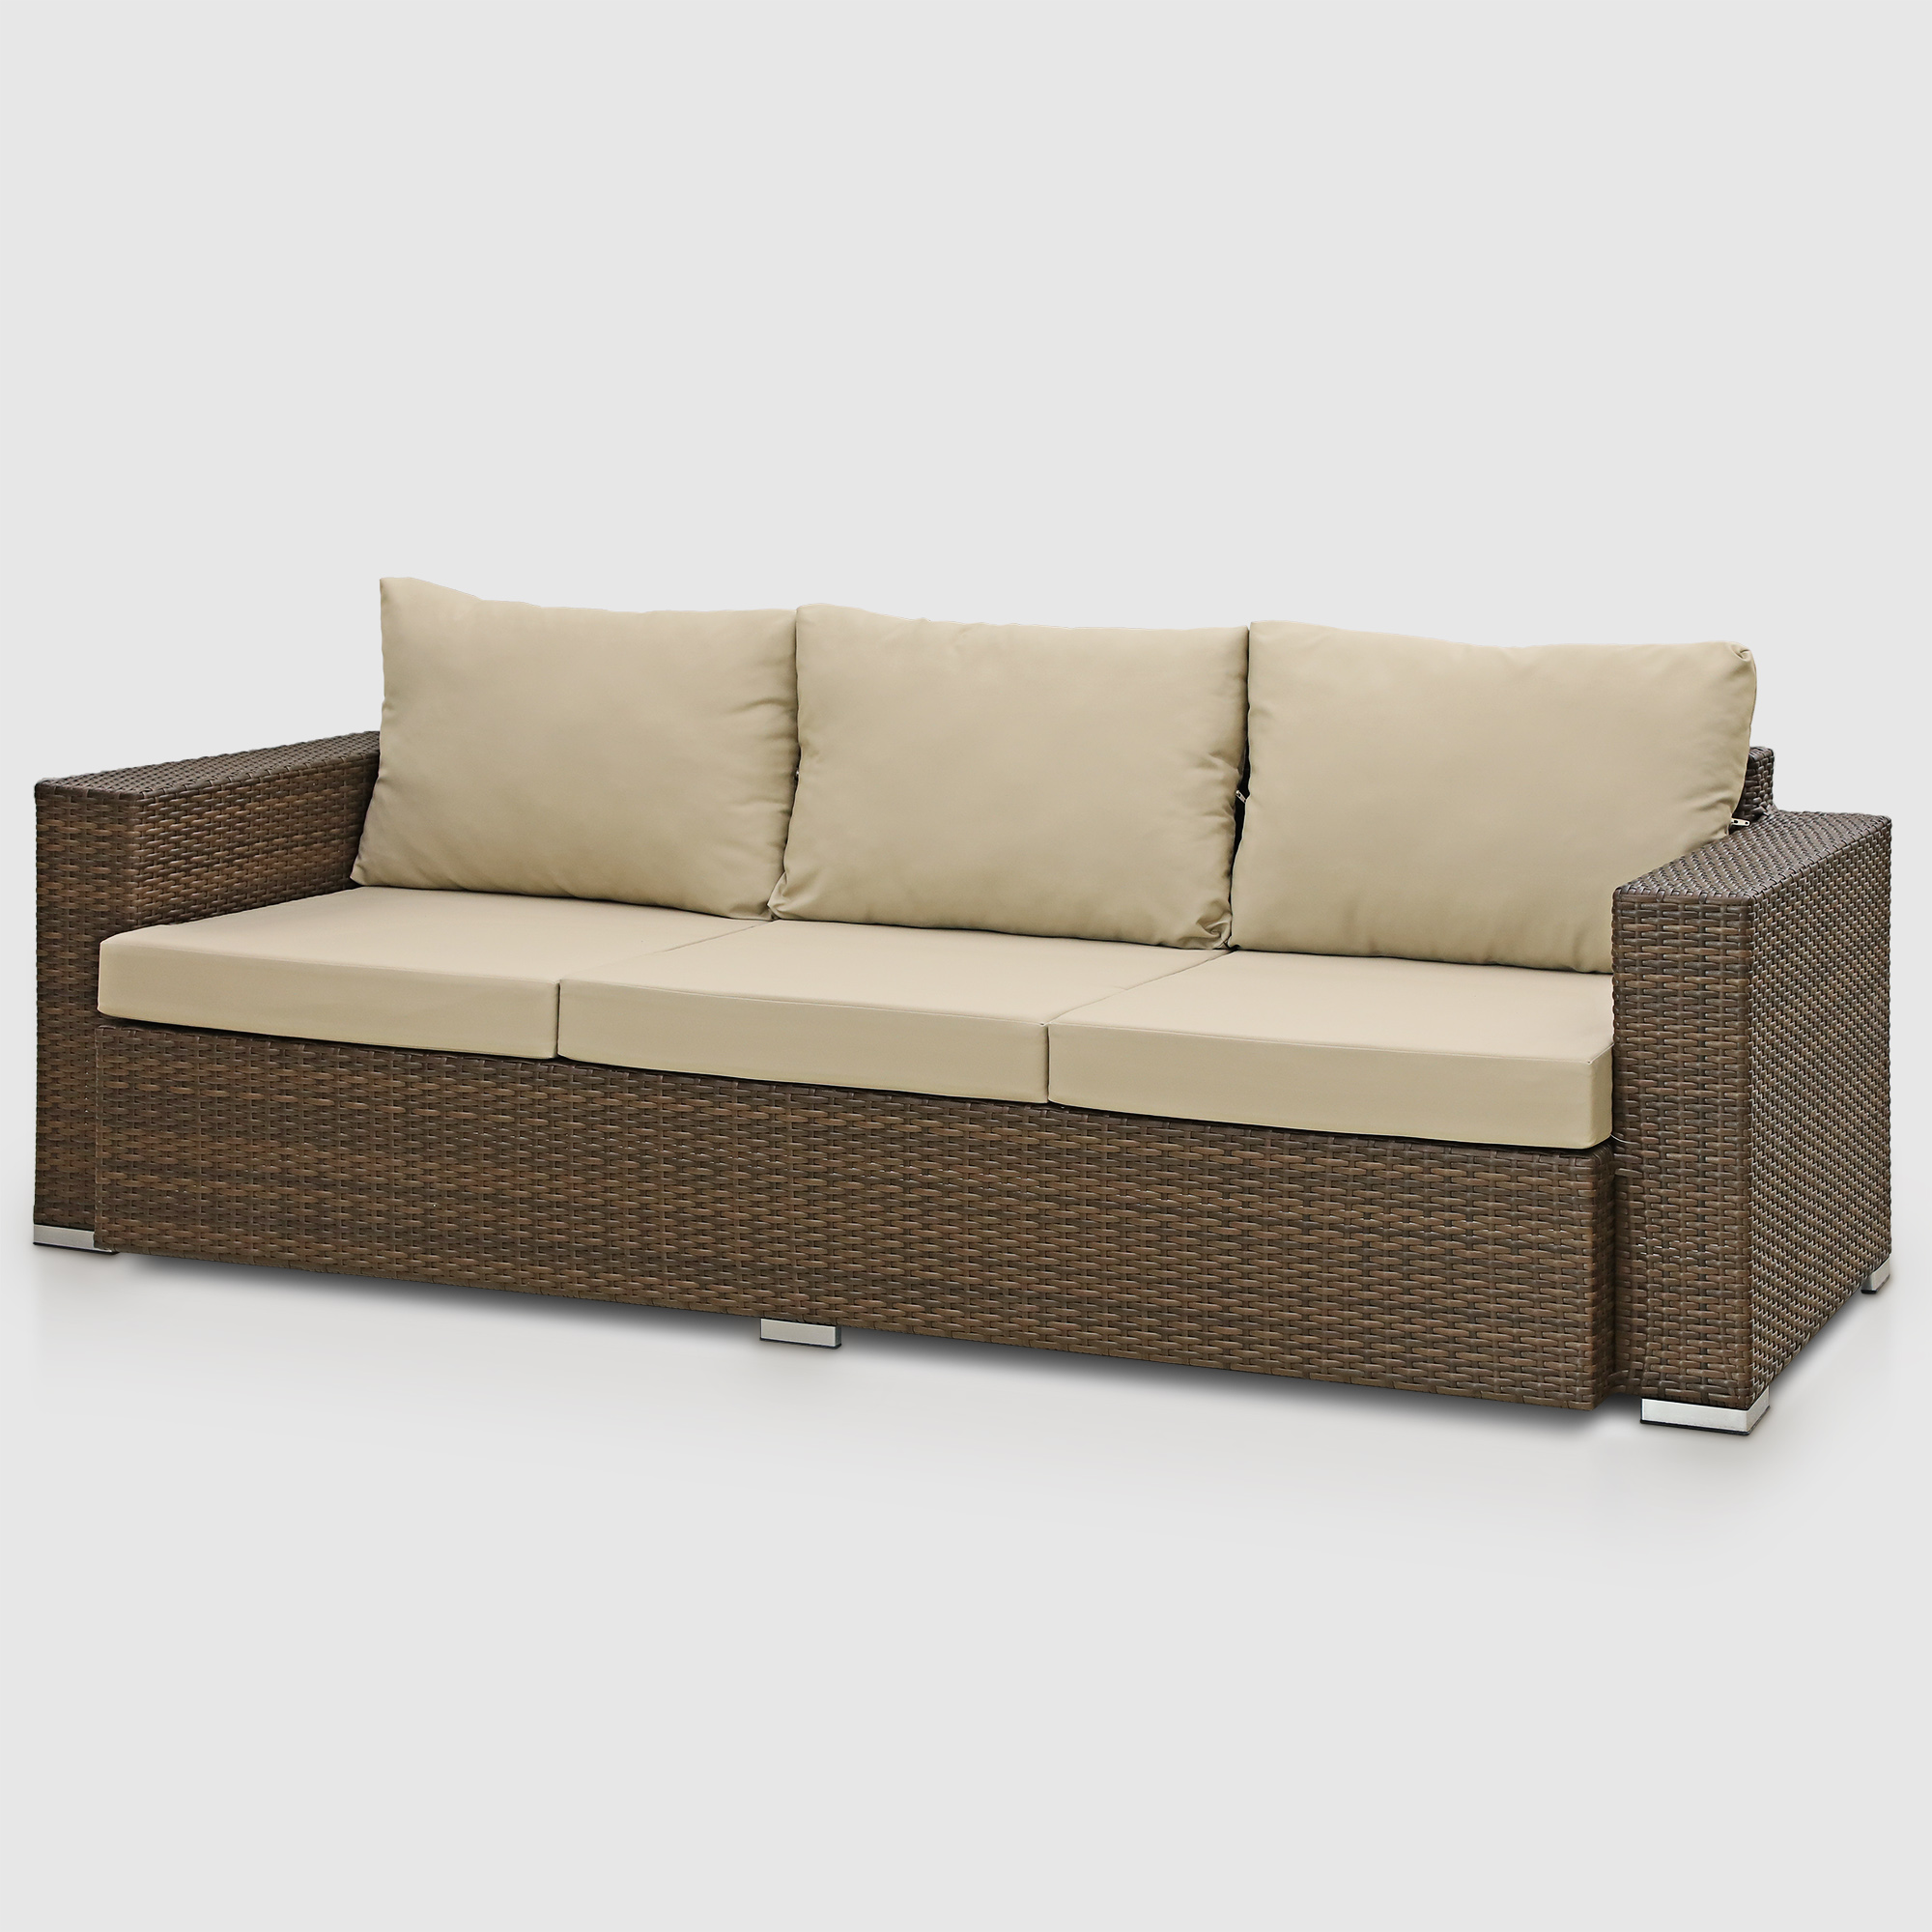 Комплект мебели Ns Rattan Cleo коричнево-бежевый 7 предметов, цвет коричневый, размер 199х68х72 - фото 4